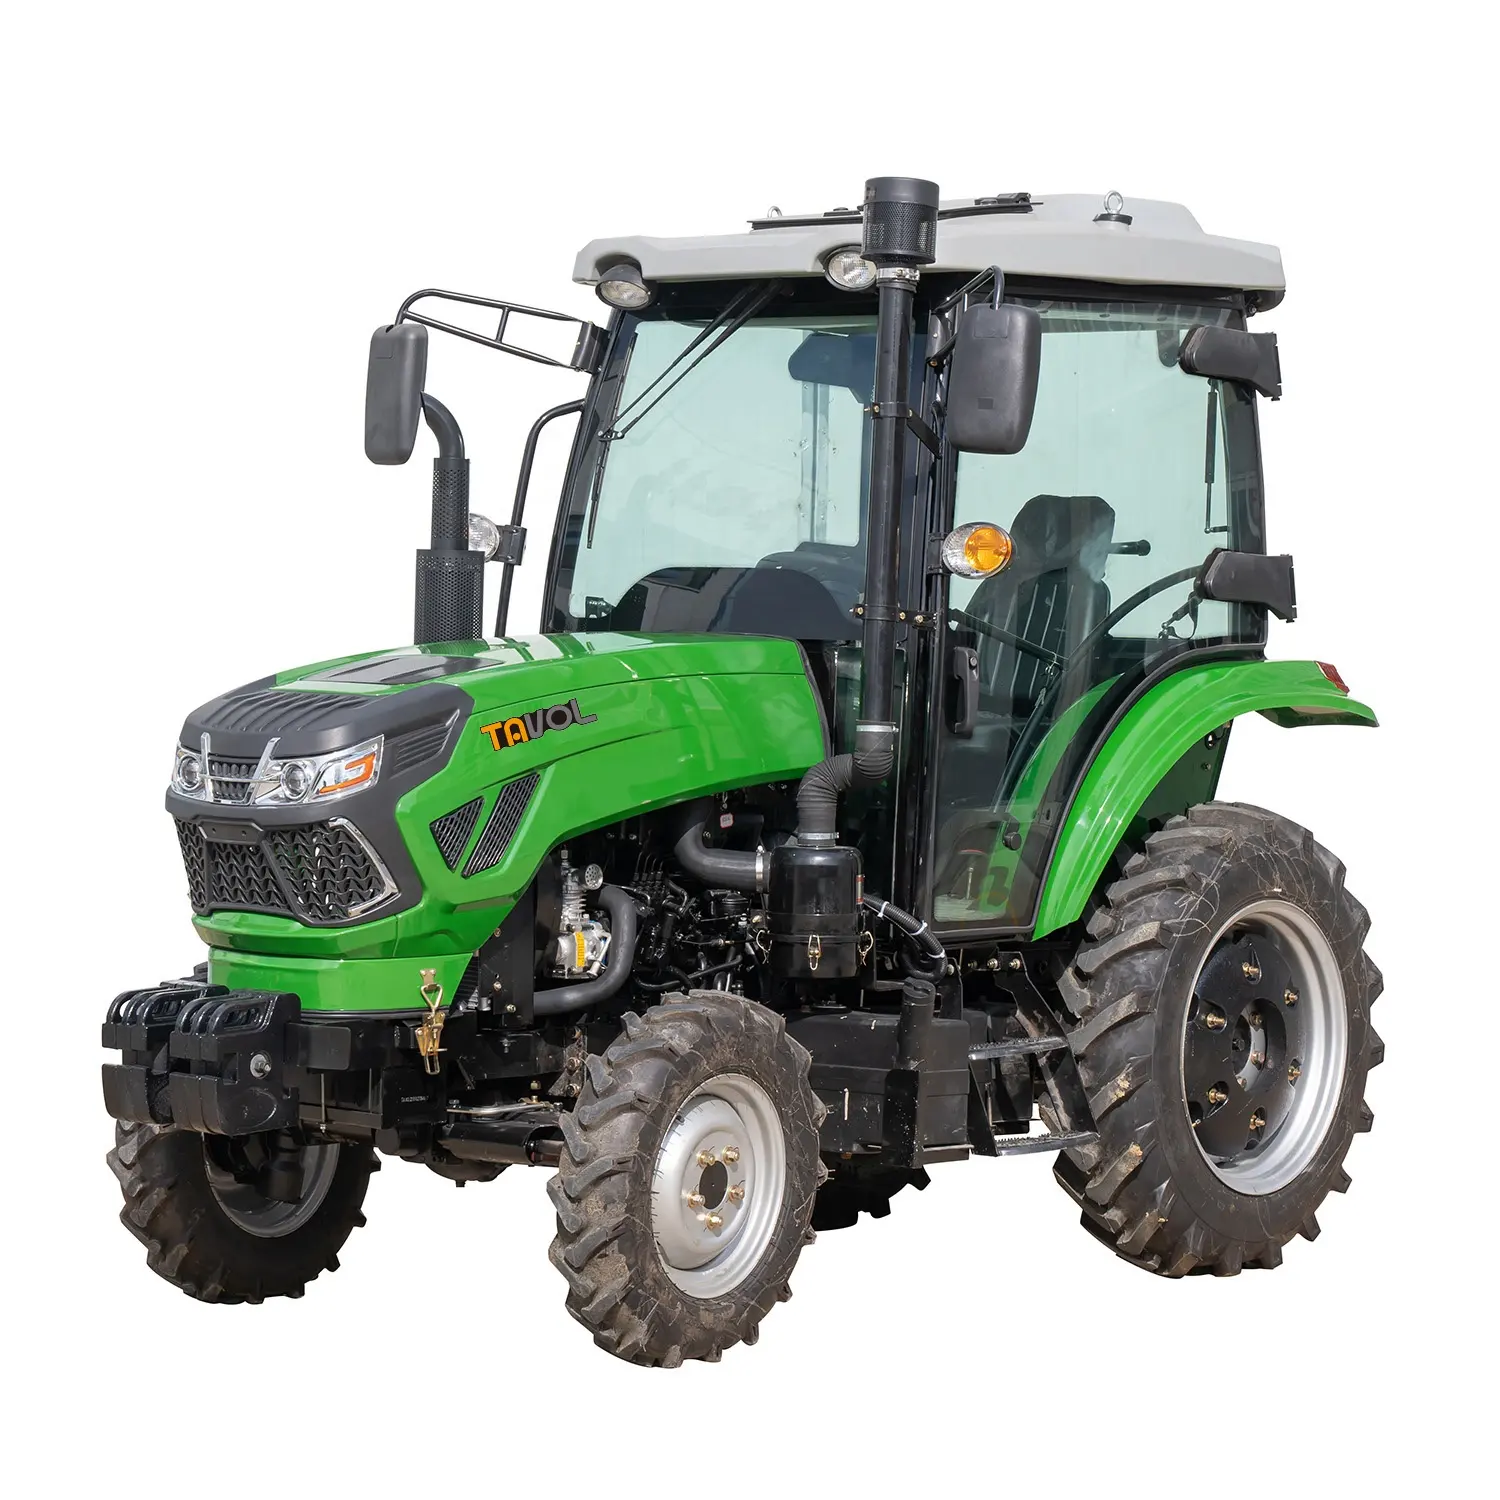 TAVOL 농업 장비 traktor 4wd 50hp 농장 휠 농업 트랙터 판매 중국에서 만든